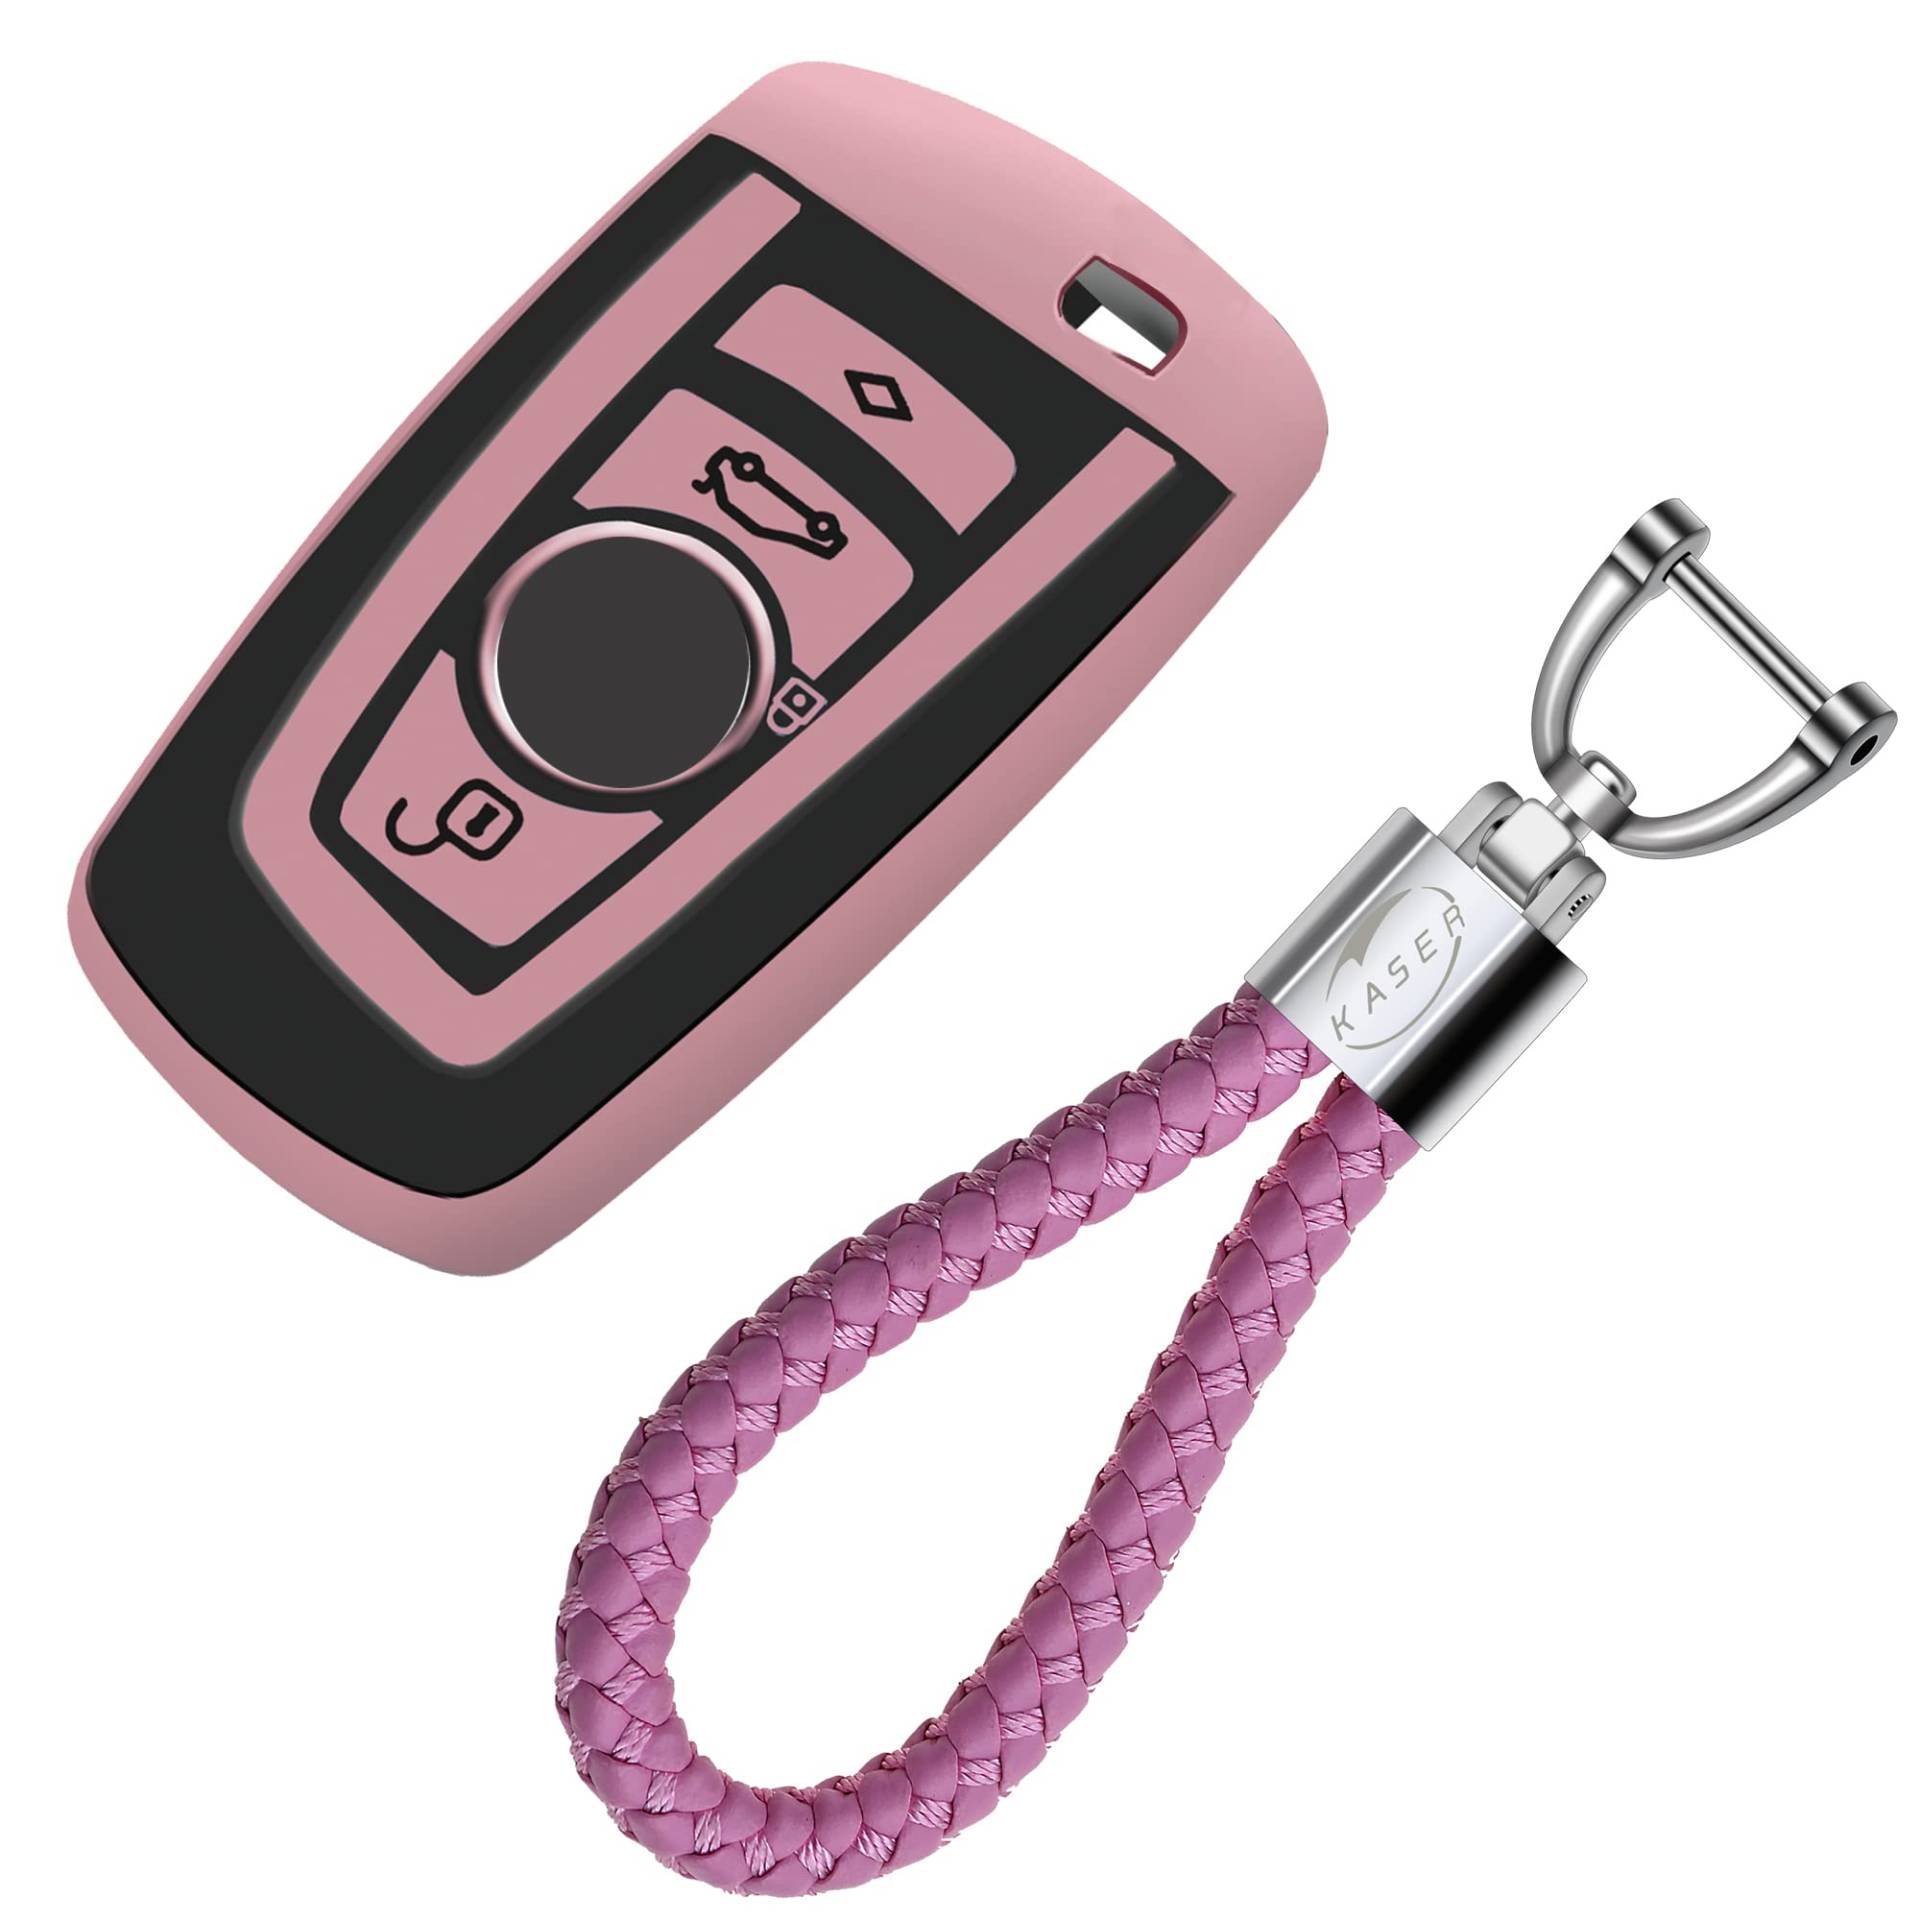 KASER Autoschlüssel Hülle kompatibel für BMW Schlüssel Serie 1 3 5 7 X1 X3 X4 X5 F30 E30 Schlüsselanhänger mit Abdeckung Silikon Schutzhülle für Fernbedienung Keyless ( Pink) von Kaser